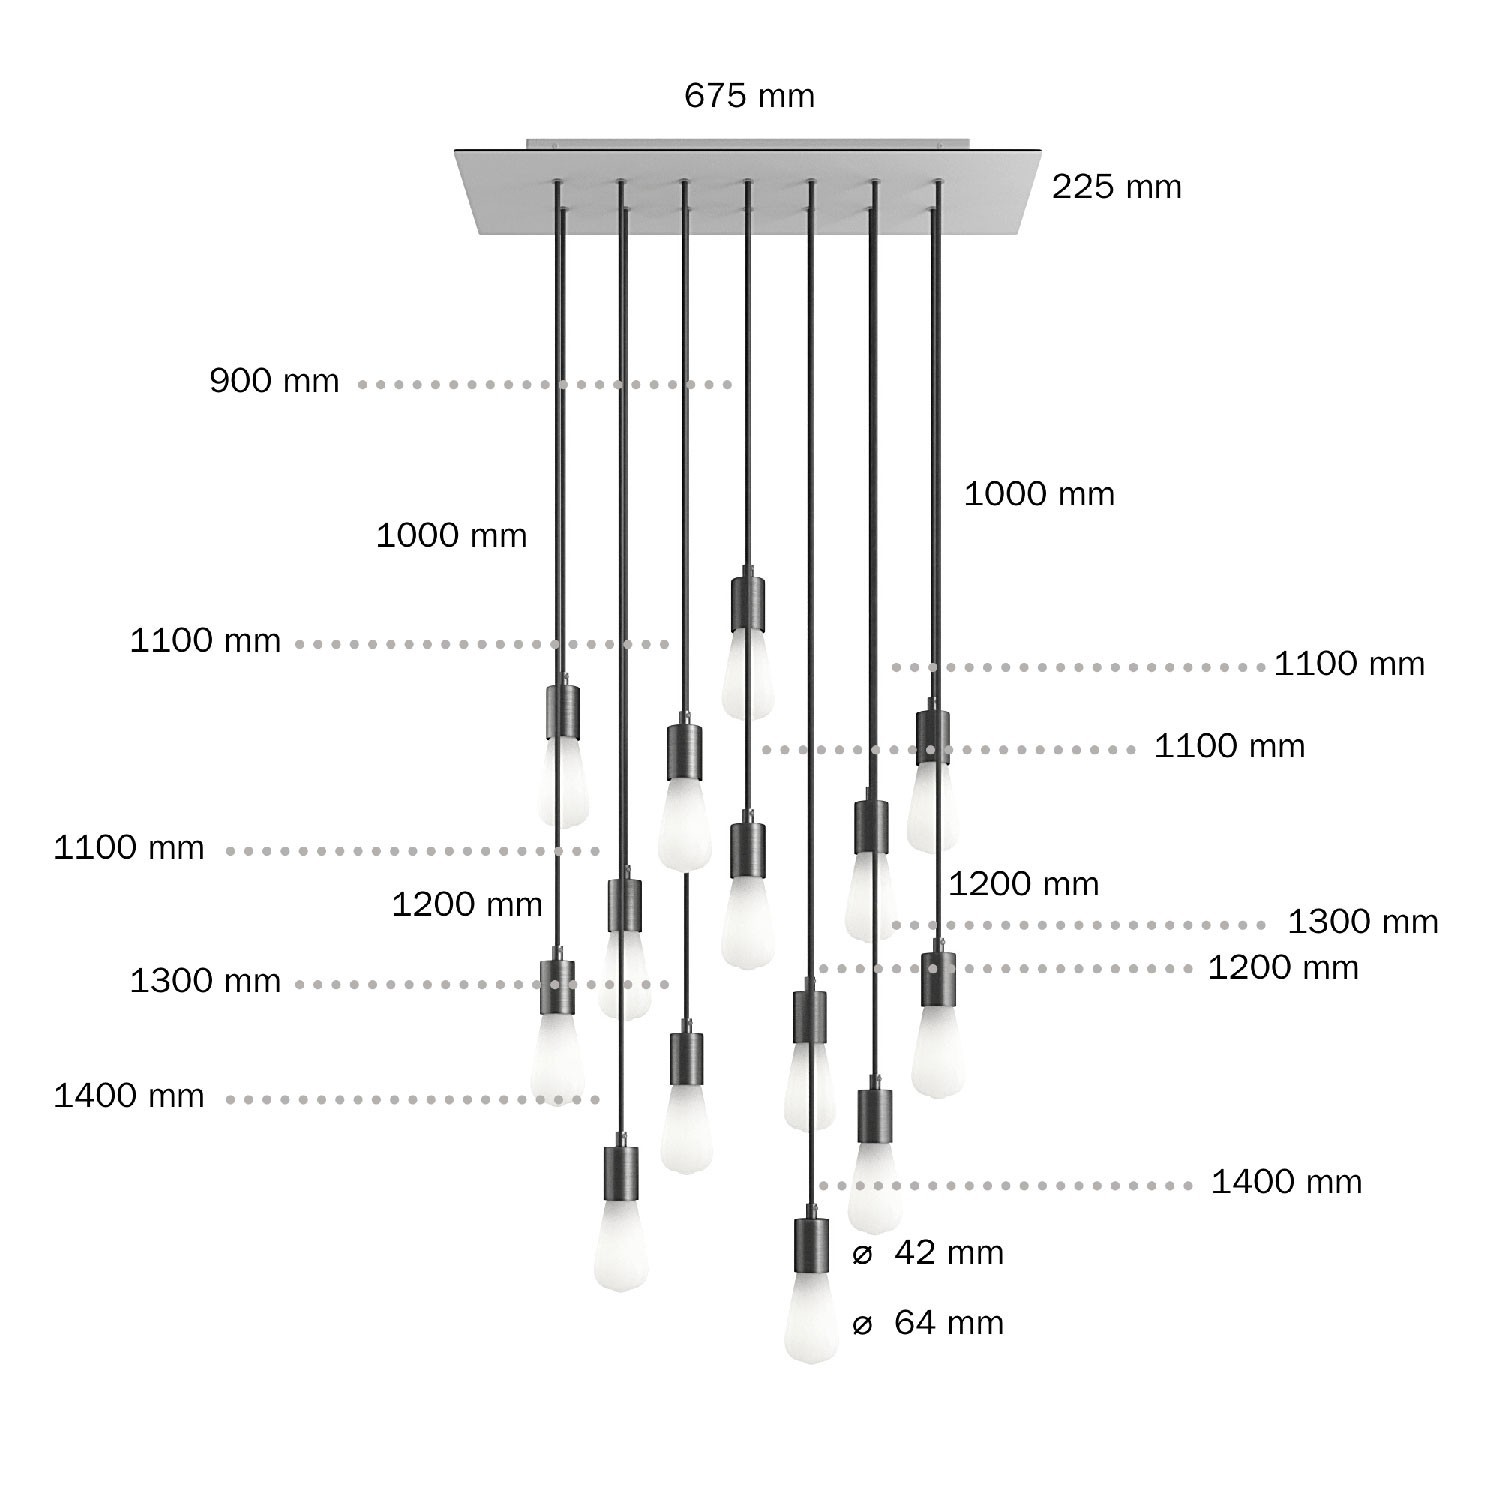 14 lichts-hanglamp voorzien van XXL rechthoekige Rose-One 675 mm compleet met strijkijzersnoer en metalen afwerking